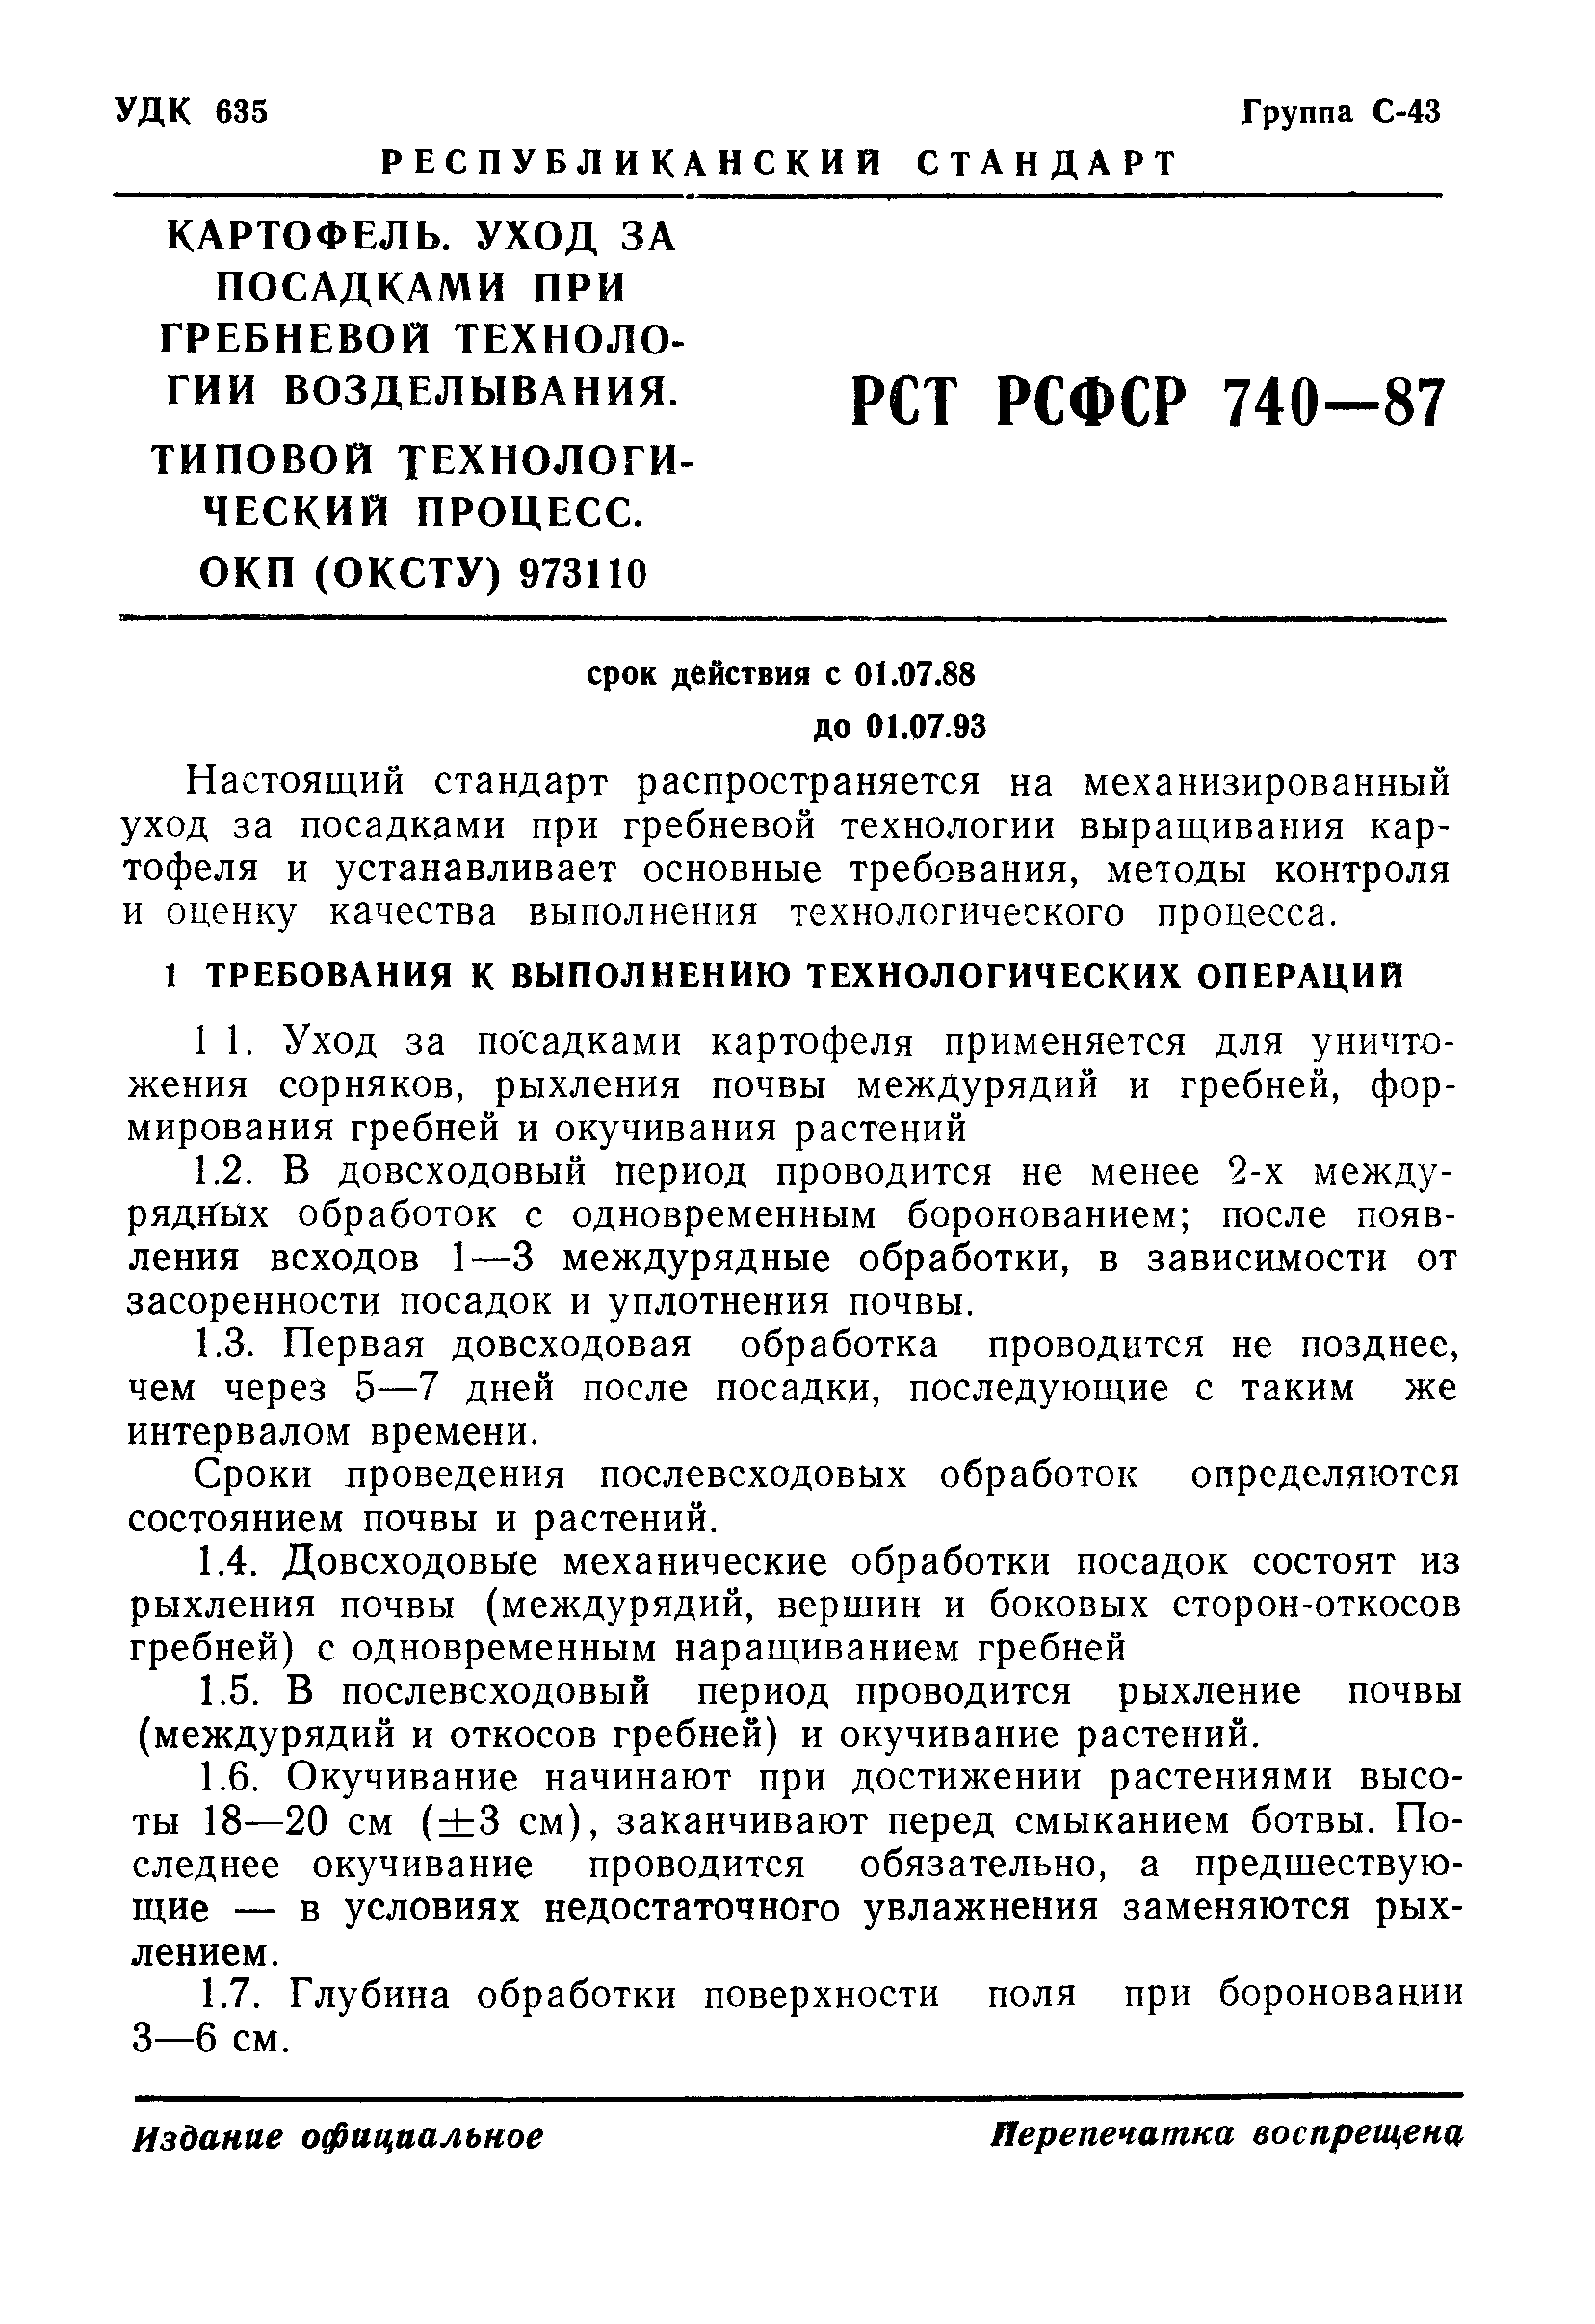 РСТ РСФСР 740-87